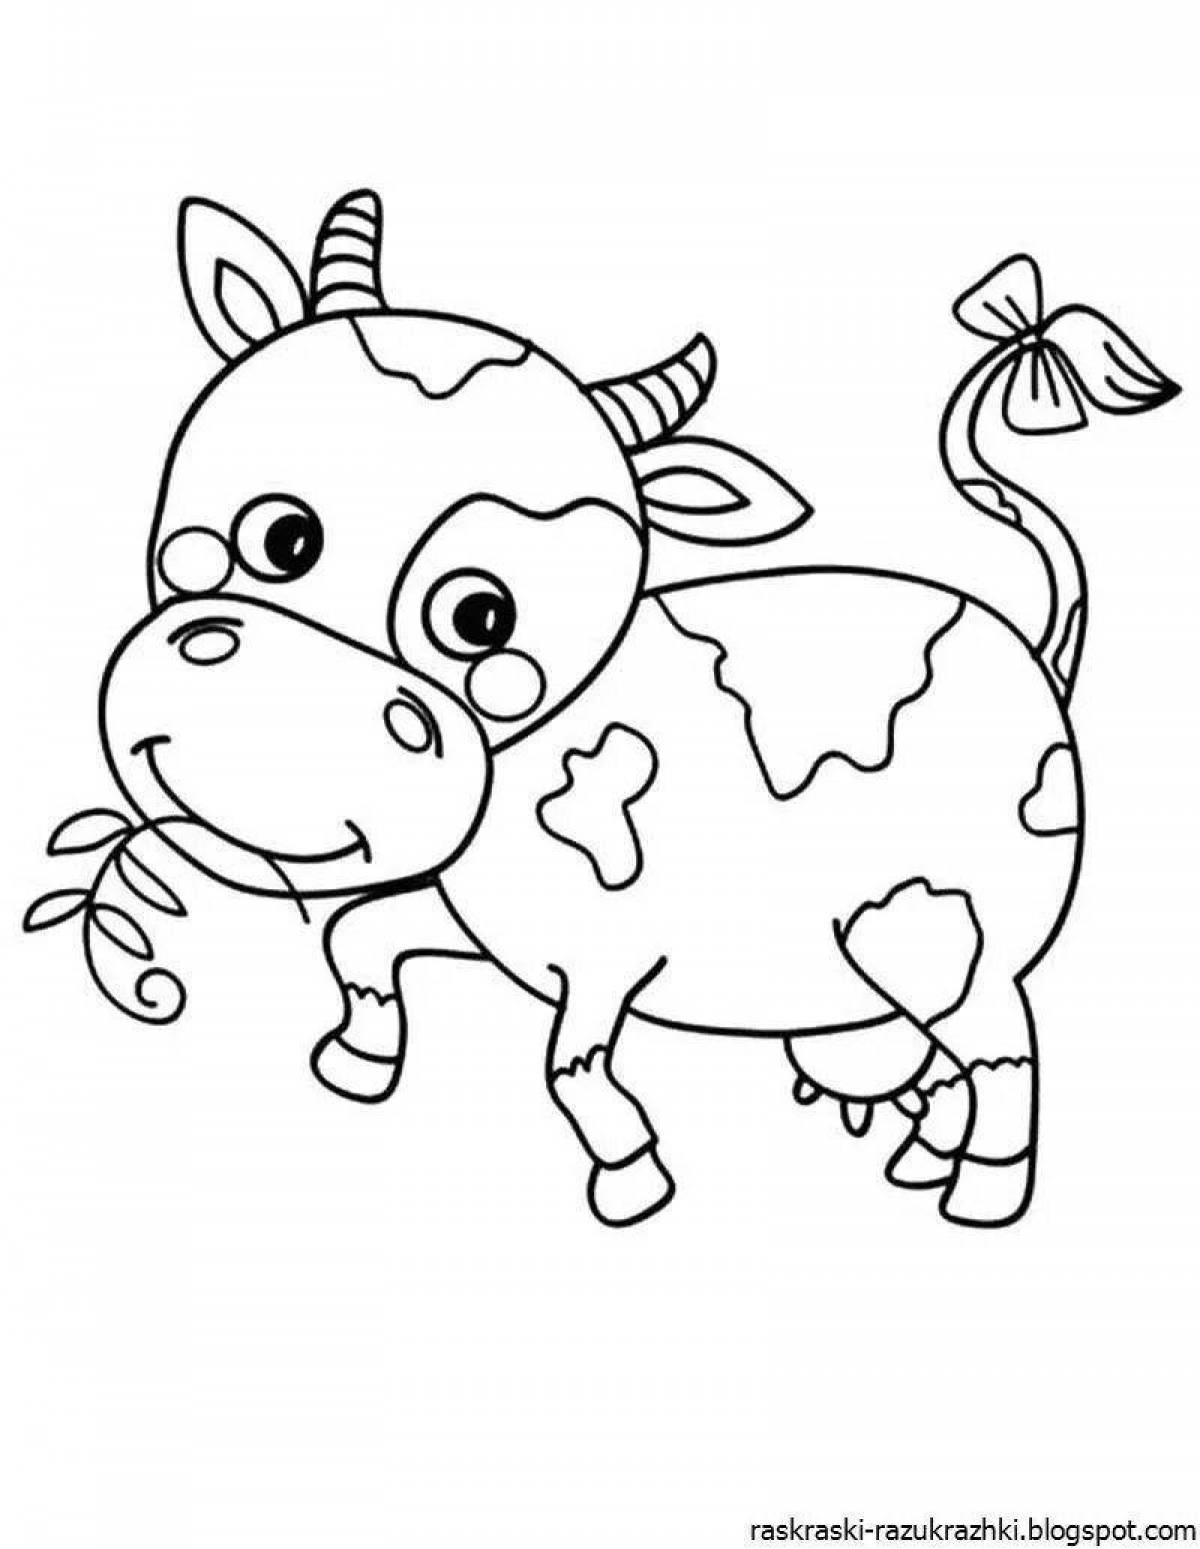 Распечатать коровку раскраску. Раскраска корова. Корова раскраска для детей. Коровка. Раскраска. Корова раскраска для малышей.